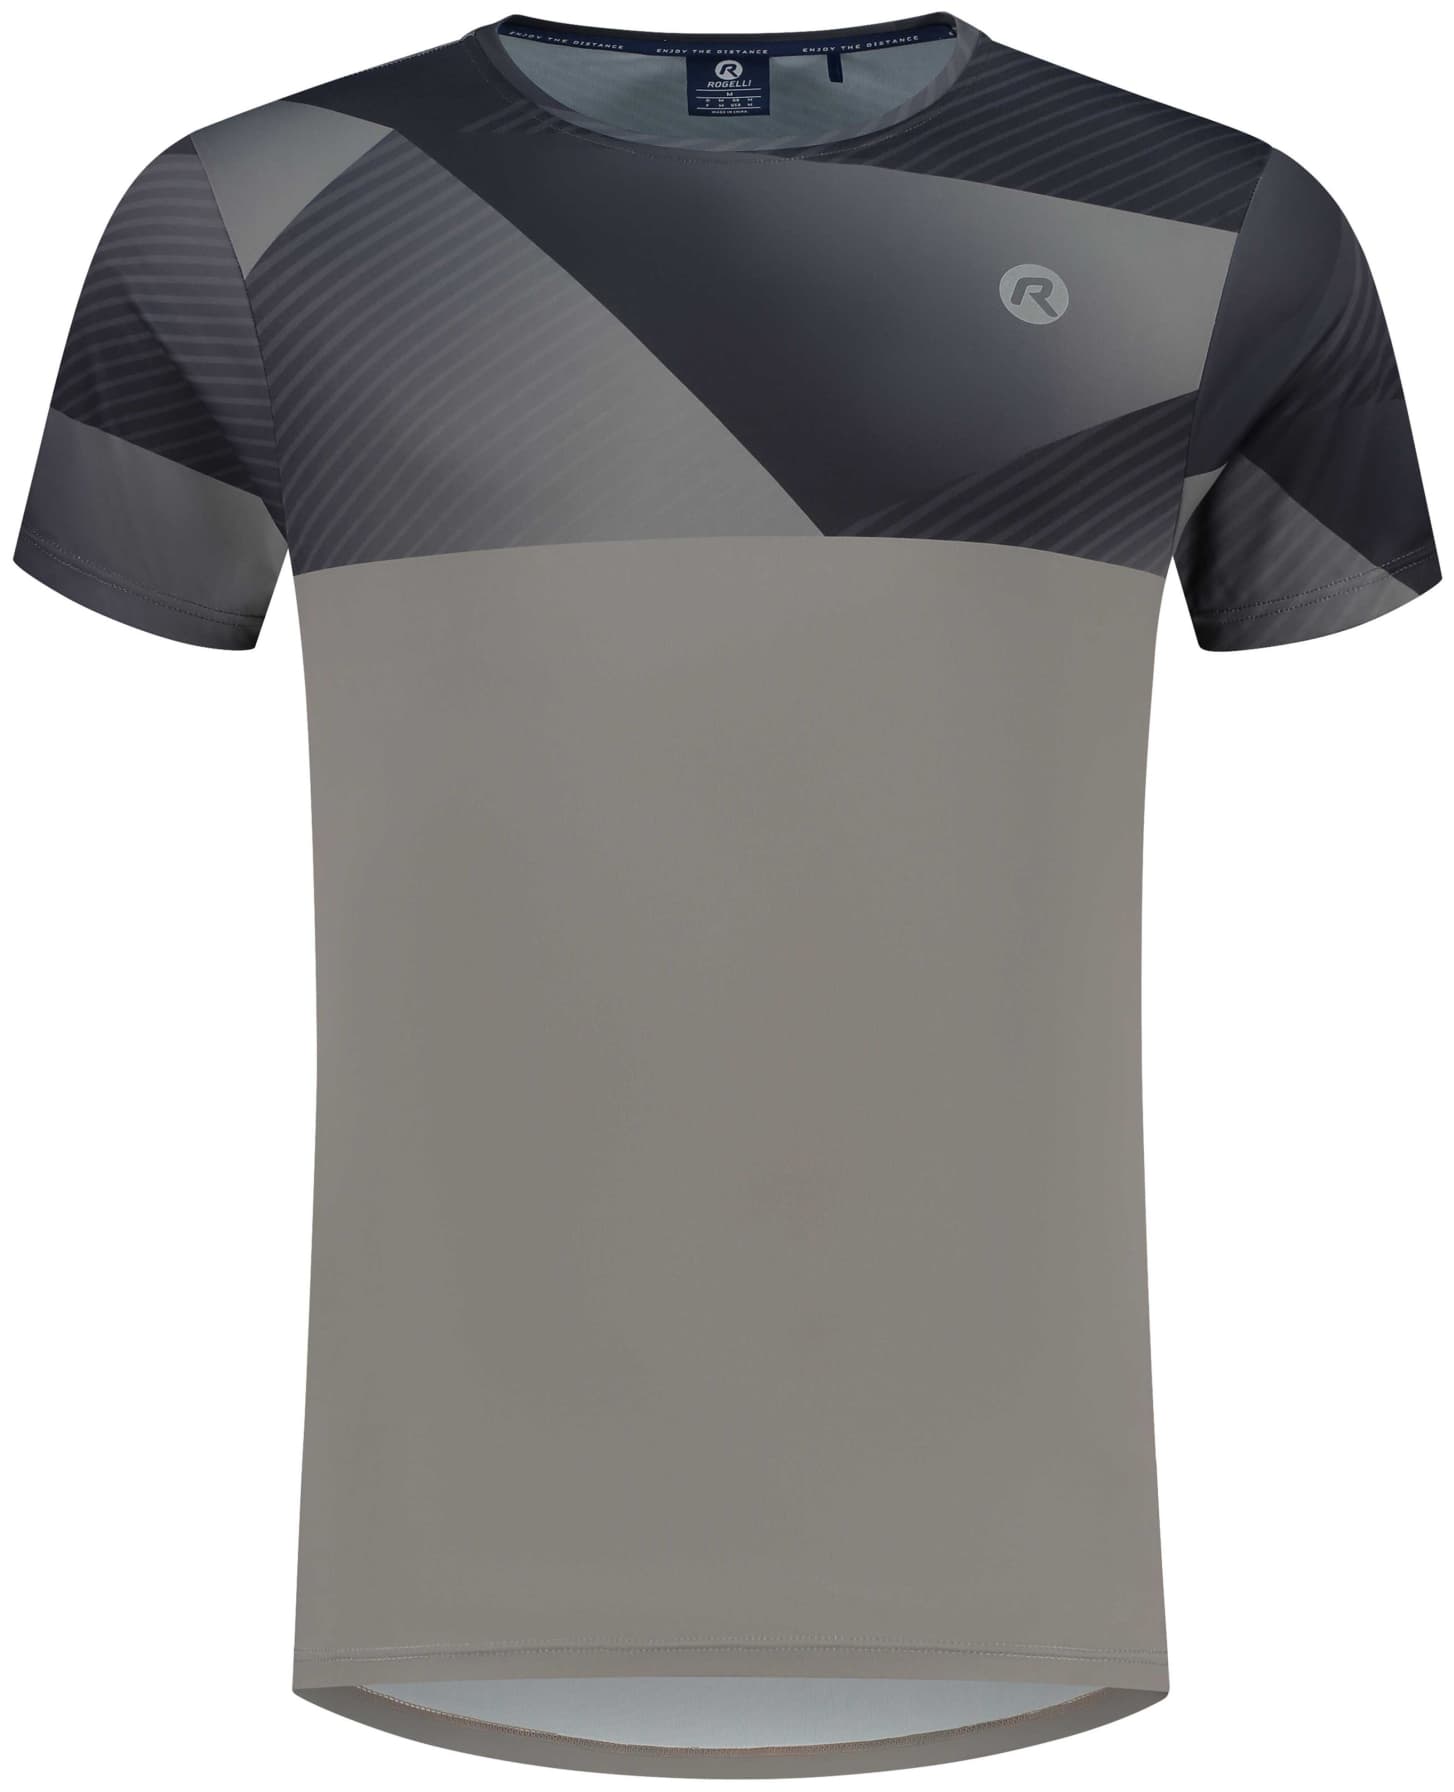 Sportovní funkční tričko Rogelli RUSH, šedé M